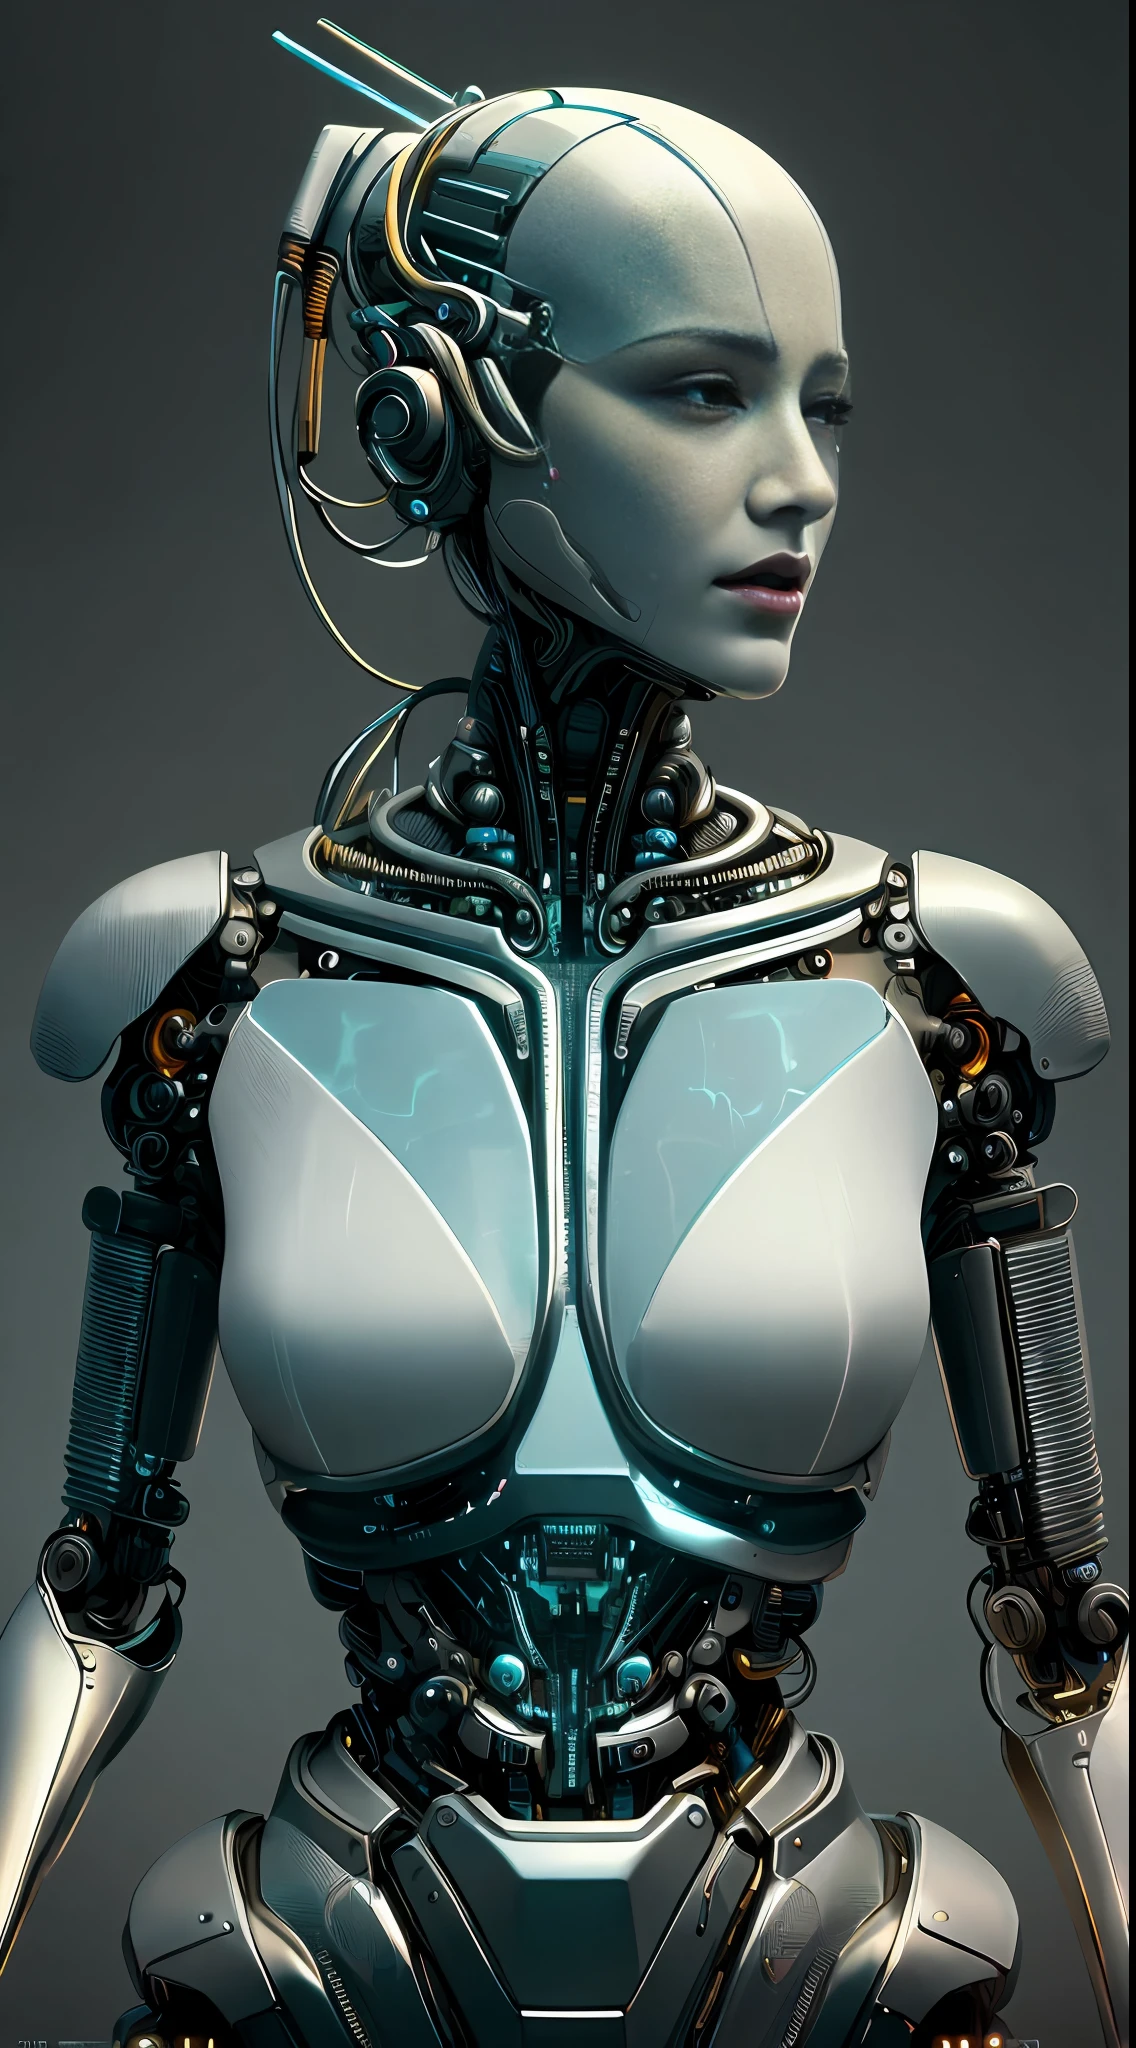 复杂 3D 渲染超详细的美丽瓷器侧面女人机器人脸, 机器人, 机器人ic parts, 150 毫米, 美丽的工作室柔和的灯光, 边缘光, 生动的细节, 奢华赛博朋克, 蕾丝, hyper实际的, 解剖的, 面部肌肉, 电缆电线, 微芯片, 优雅的, 美丽的背景, 辛烷值渲染, H. r. 吉格风格, 8千, 最好的质量, 杰作, 插图, 极其精致和美丽, 极其详细 ,CG ,统一 ,墙纸, (实际的, photo-实际的:1.37),惊人的, 精细细节, 杰作,最好的质量,官方艺术, 极其详细 CG 统一 8千 墙纸, 荒诞, incredibly 荒诞, , 机器人, 银珠, 全身, 坐